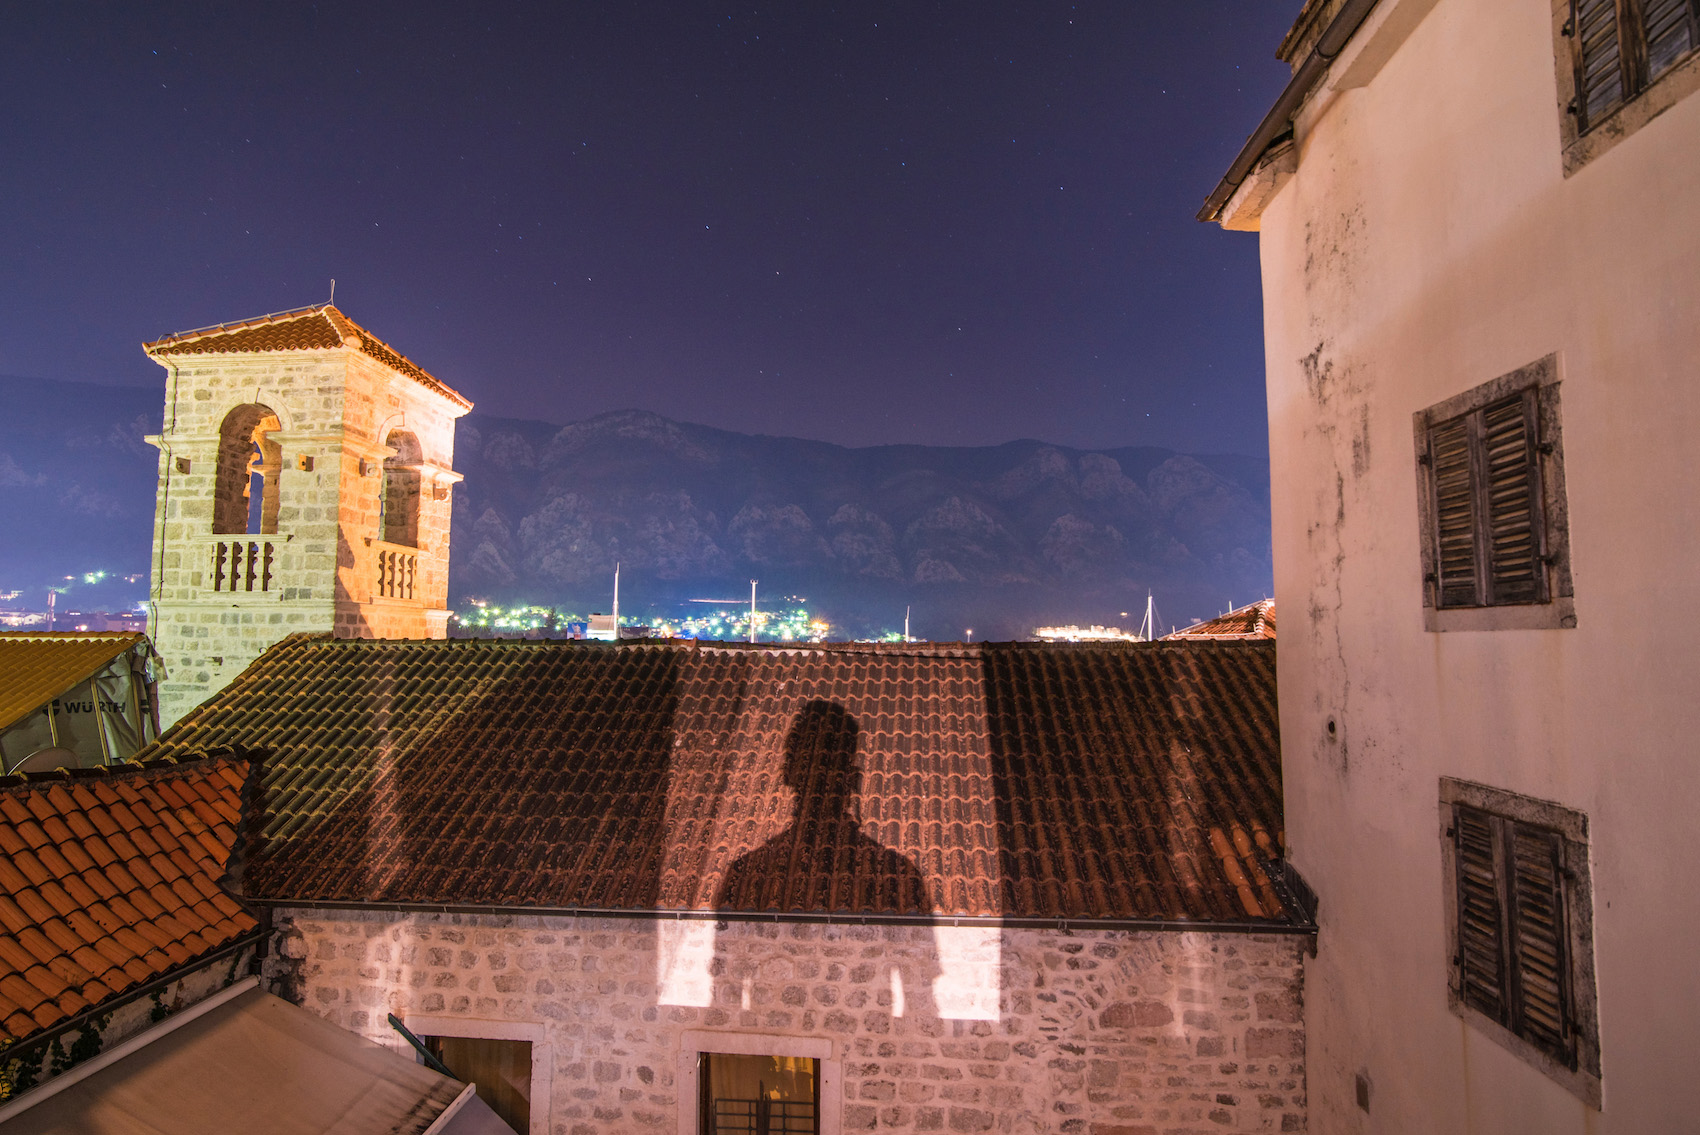 Robert Schrader in Kotor, Montenegro